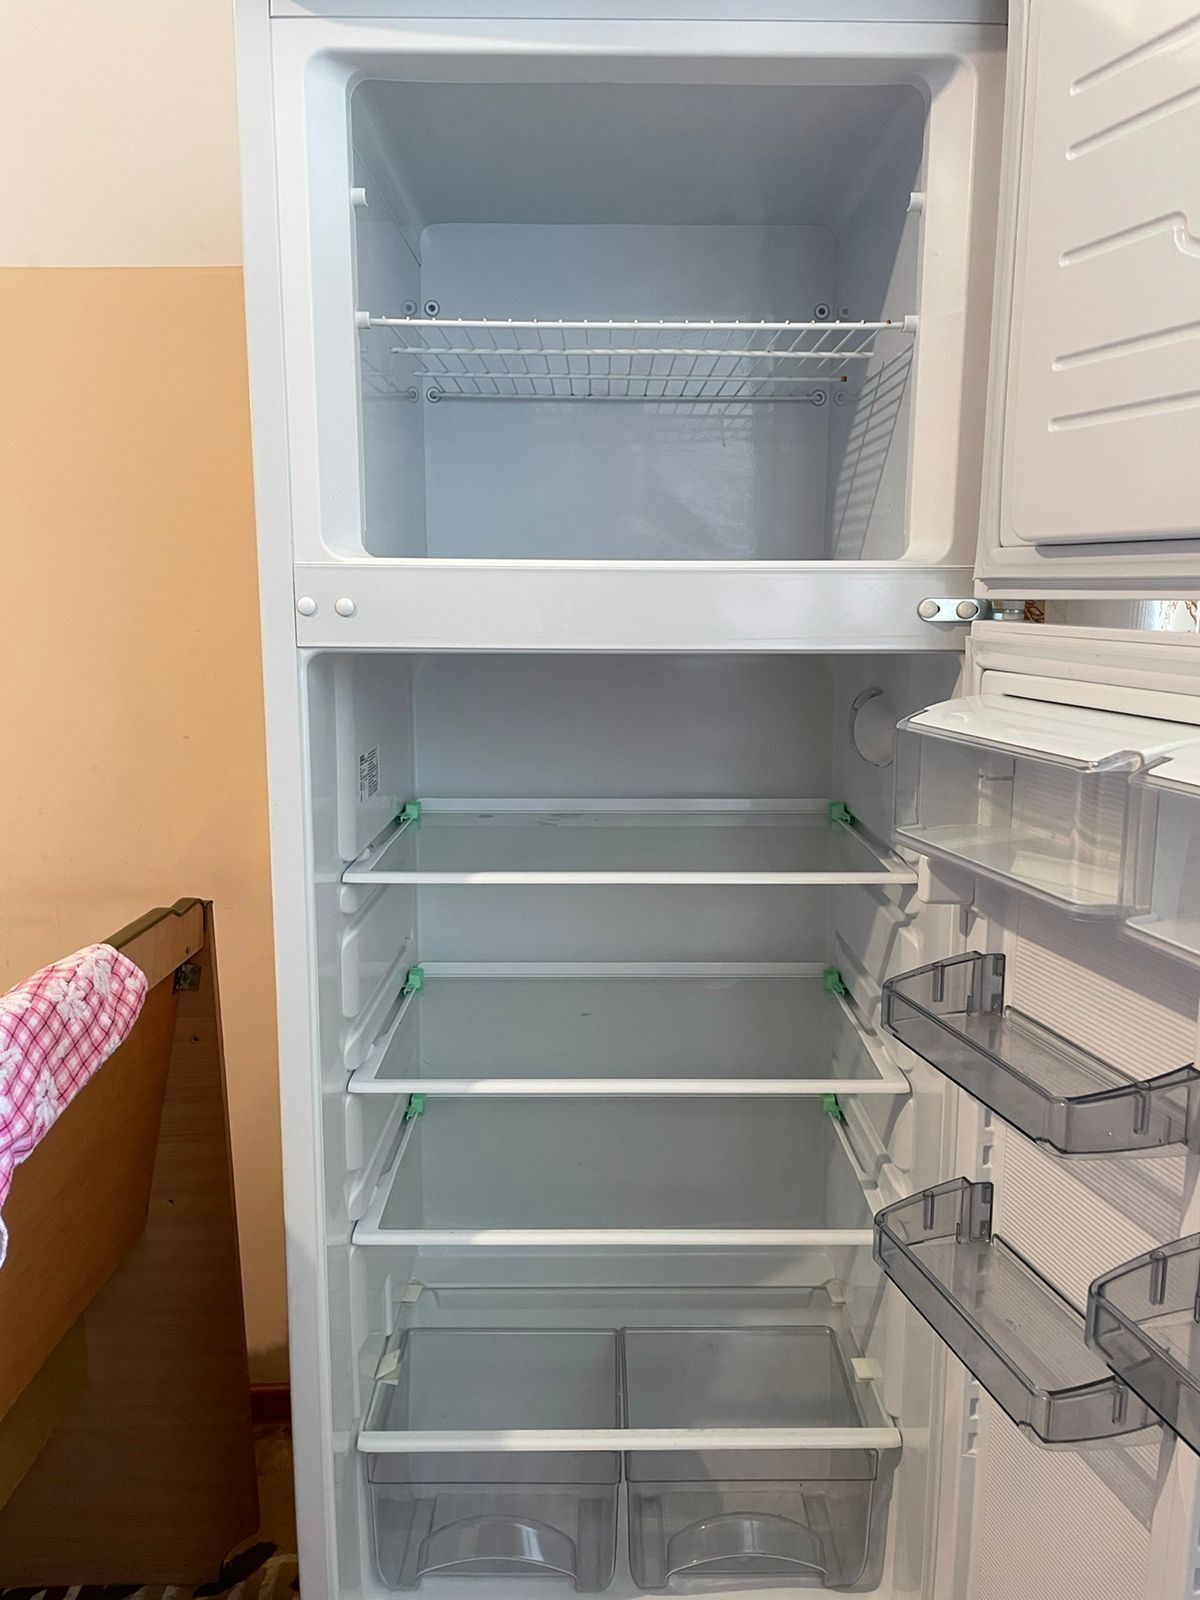 Продам холодильник ATLANT в хорошем состоянии 8.7.0.5.2.6.5.5.8.5.8.